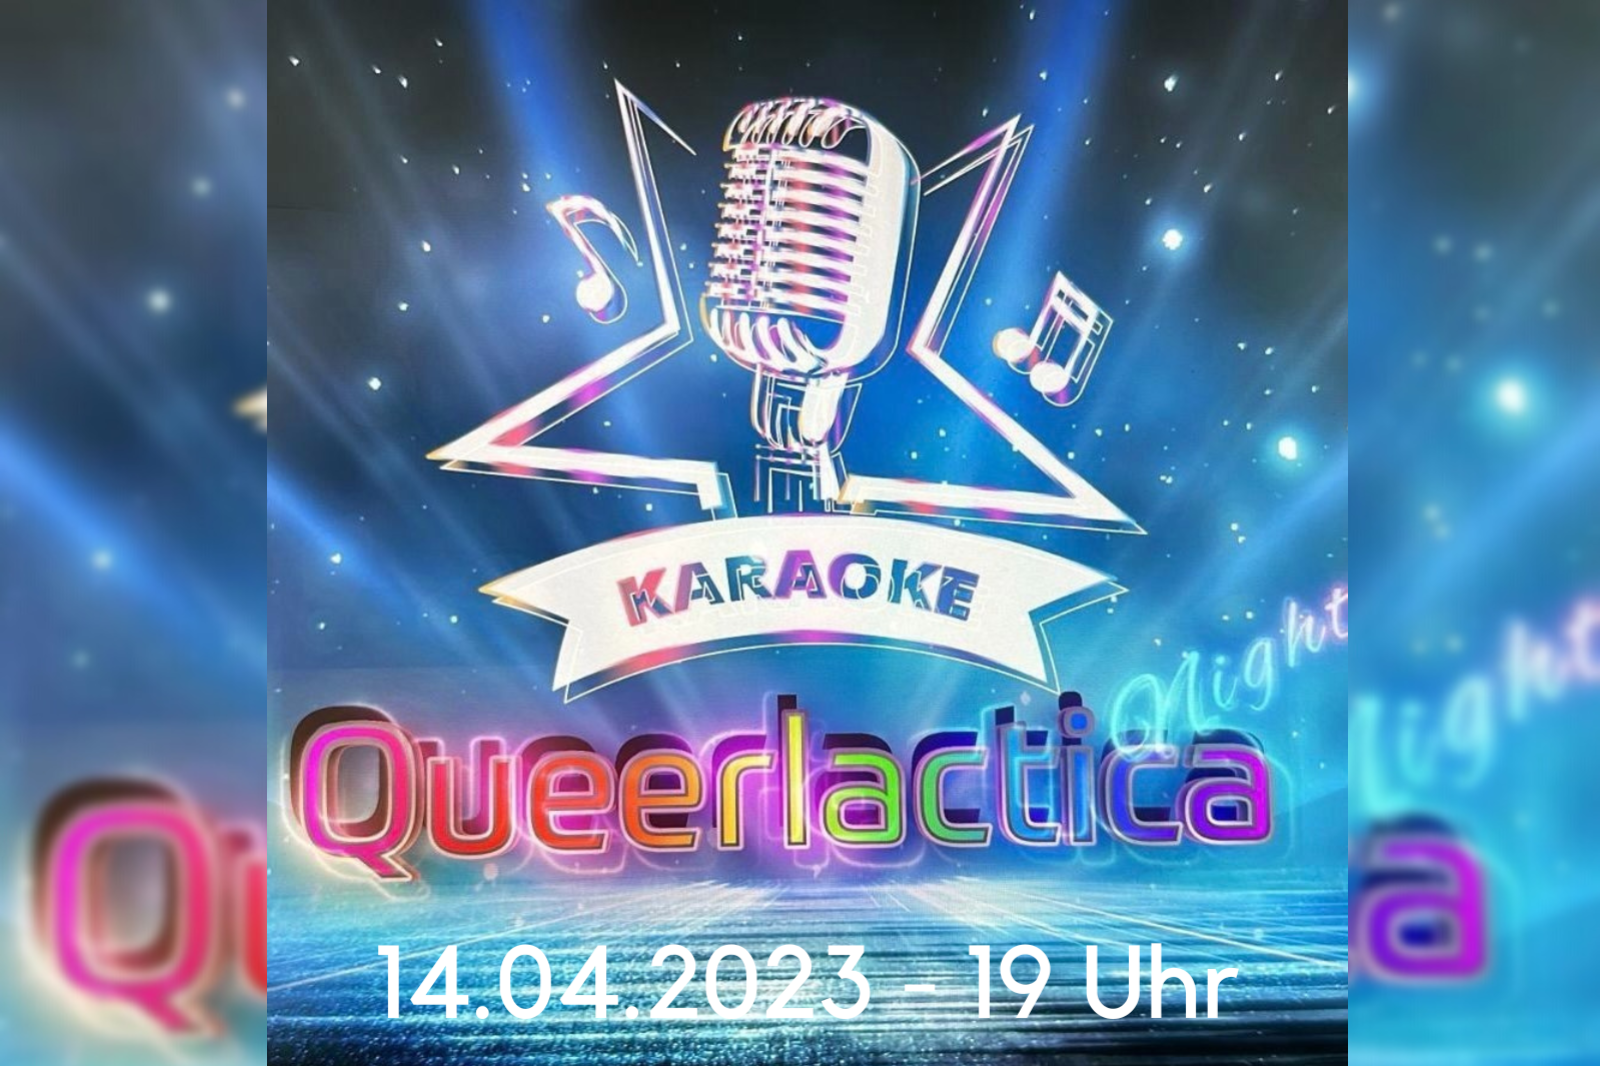 Das Bild zeigt ein Mikrophon vor blauen Grund und kündigt die nächste Karaoke-Party im QZM am 14.04.2023 ab 19 Uhr an.